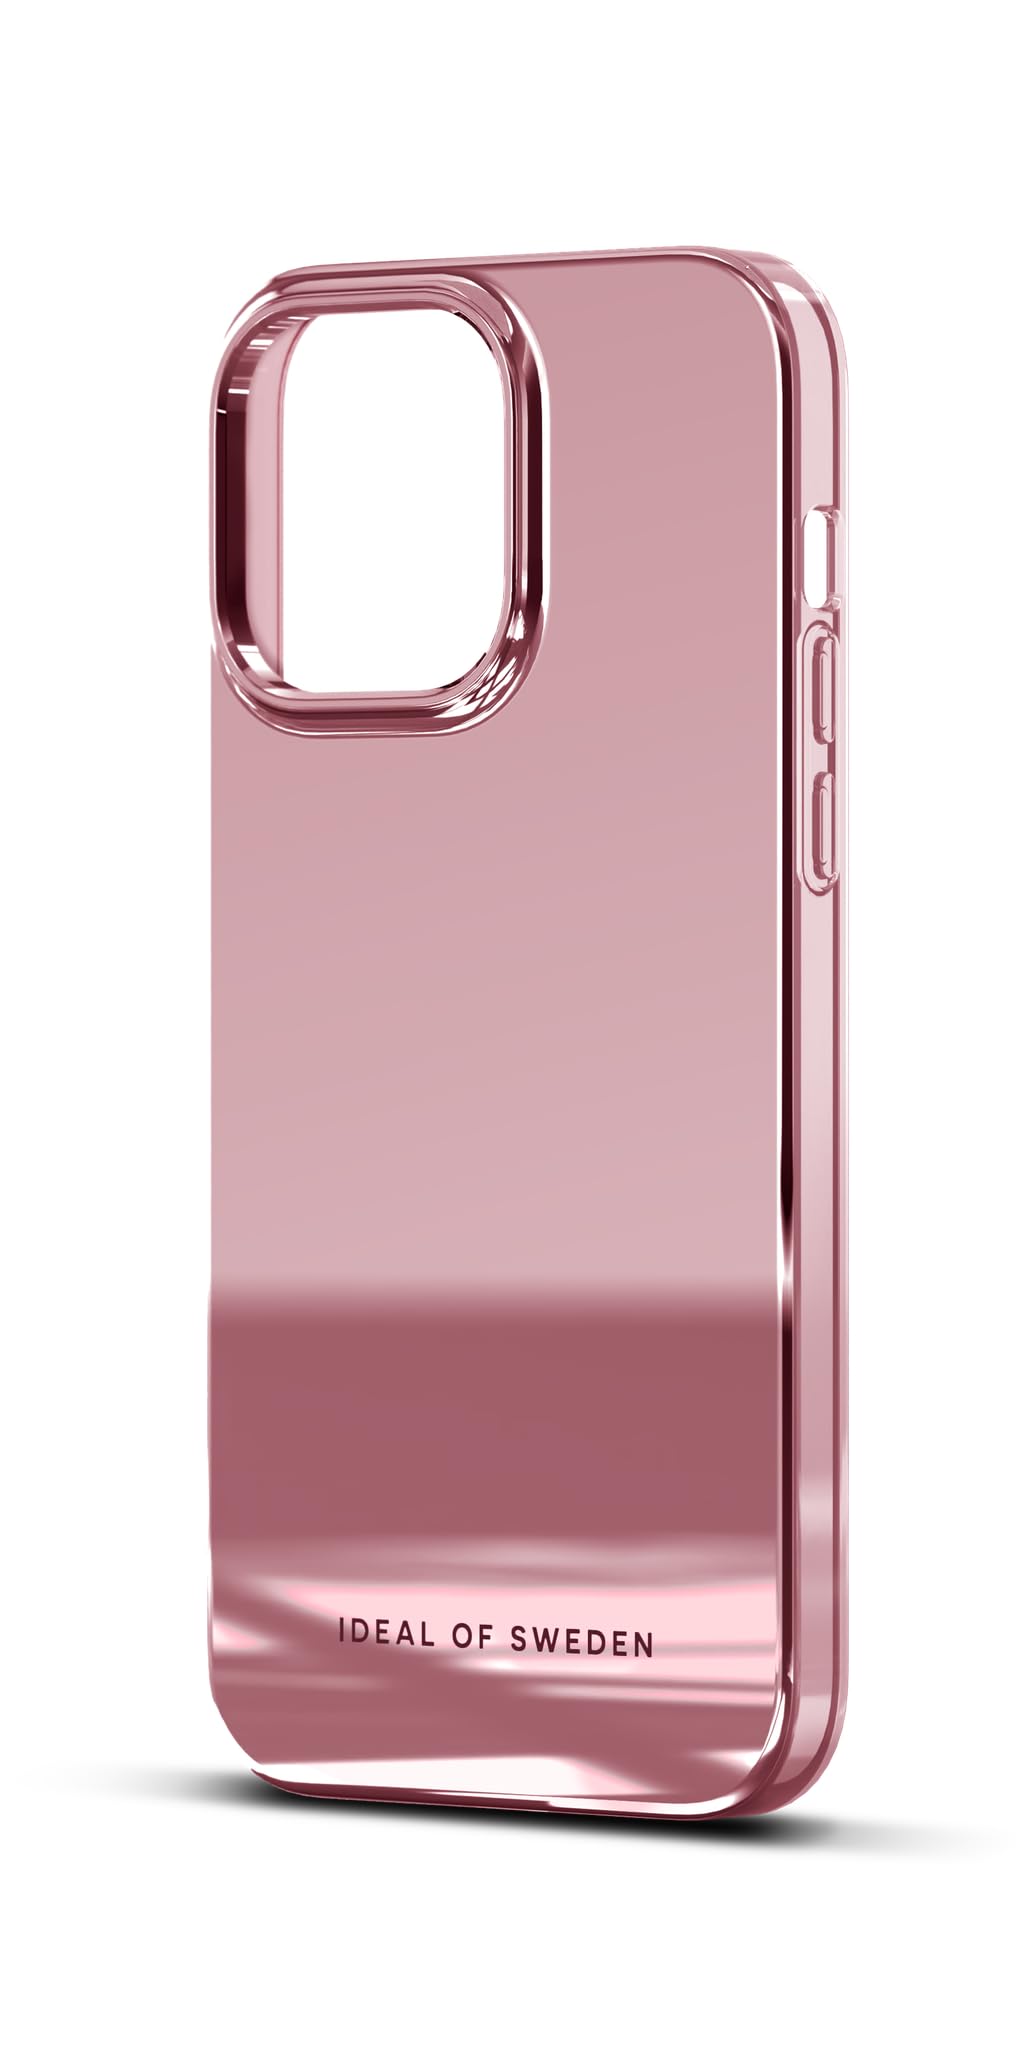 IDEAL OF SWEDEN Durchsichtige Handyhülle mit erhöhten Kanten und Nicht vergilbenden Materialien, fallgetesteter Schutz mit Spiegel Finish, kompatibel mit iPhone 14 Pro Max (Rosa)